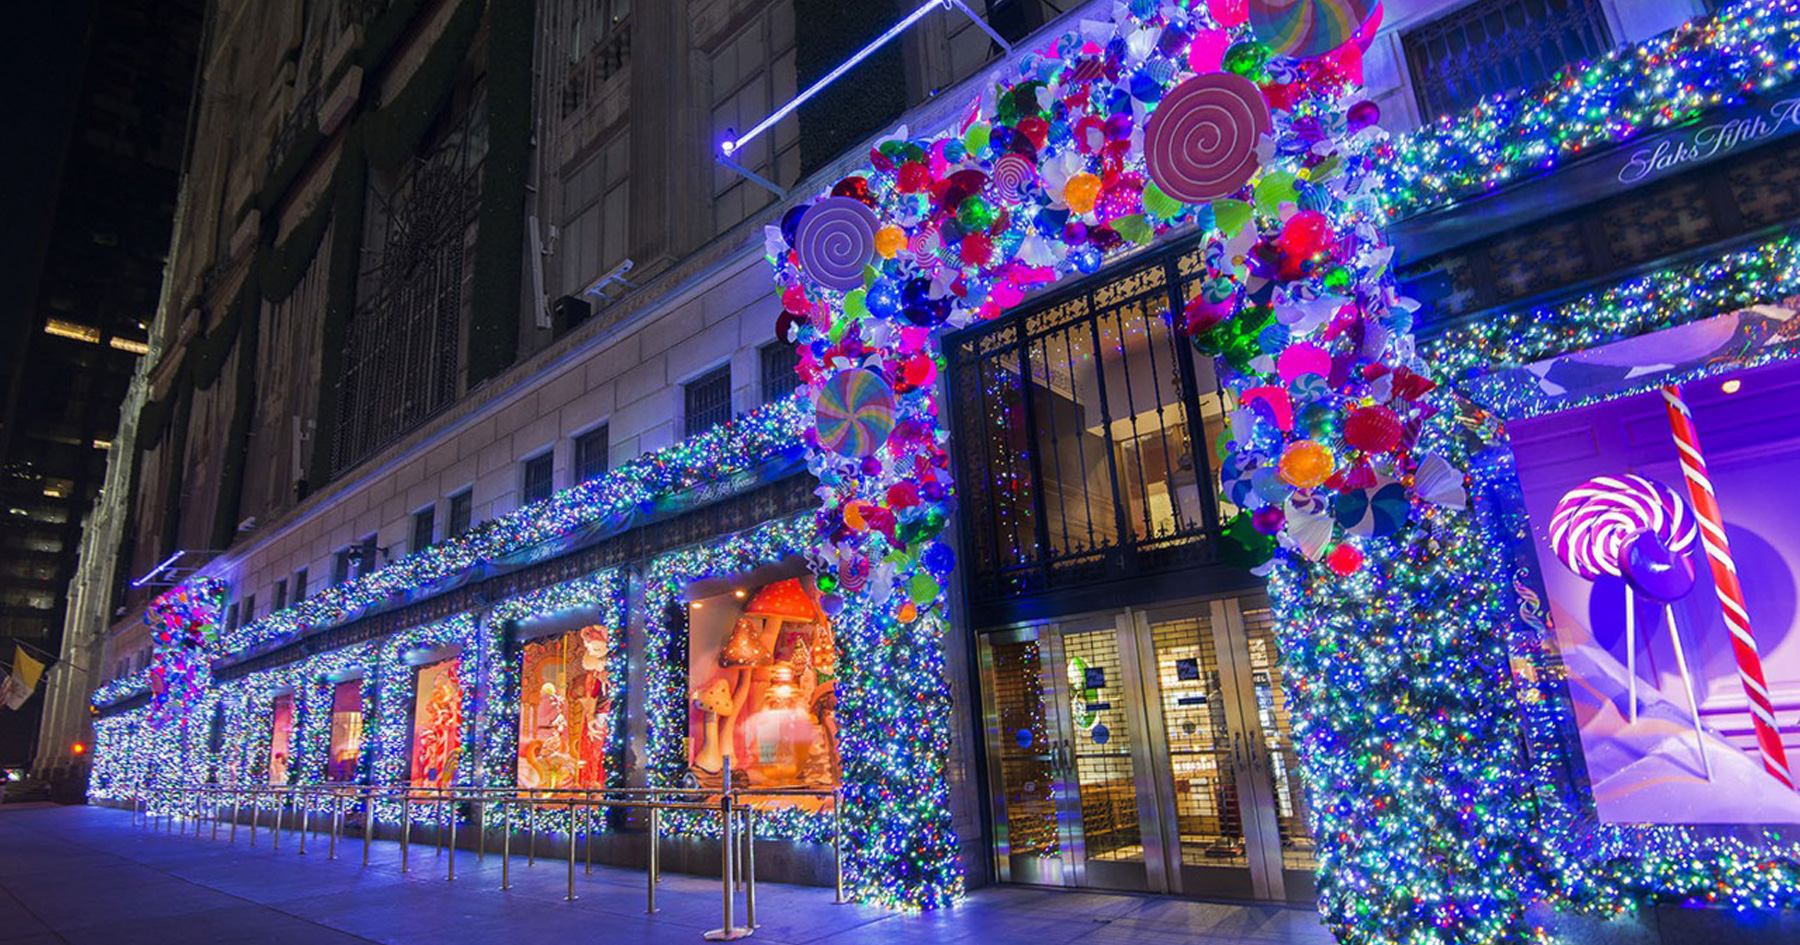 ポップでカラフルな心躍るデザイン アメリカ ニューヨークのクリスマス Digispot デジスポット